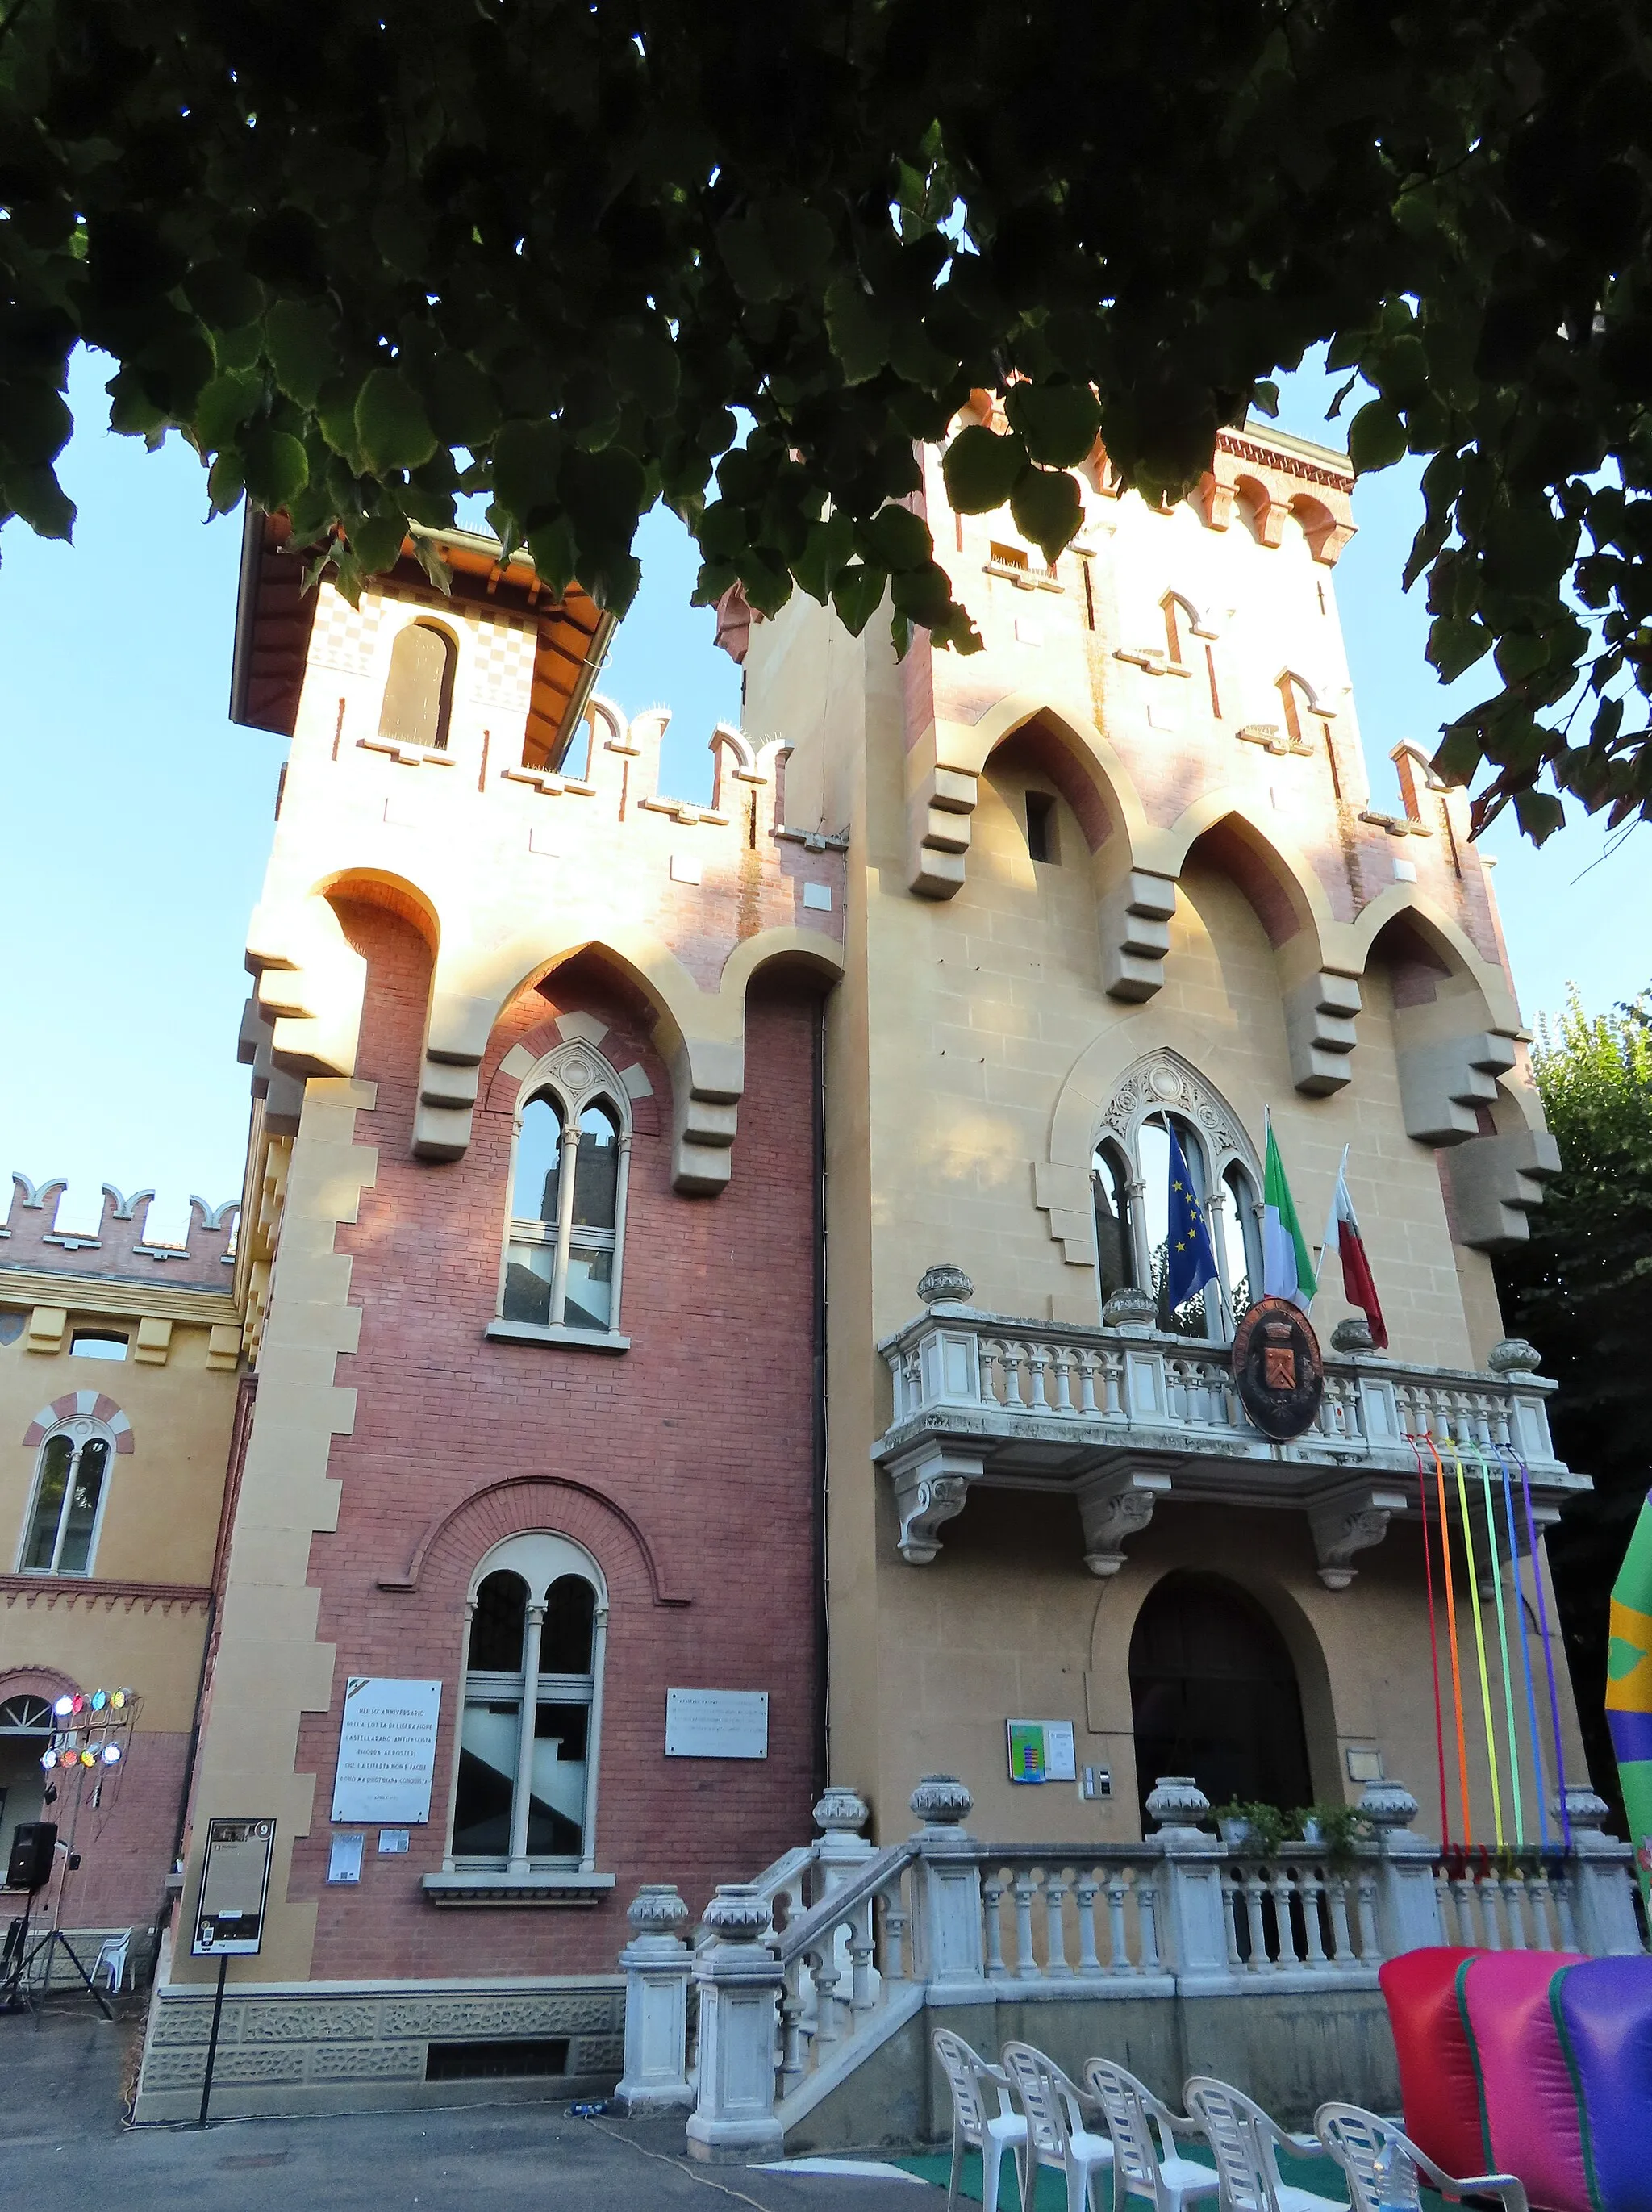 Billede af Emilia-Romagna